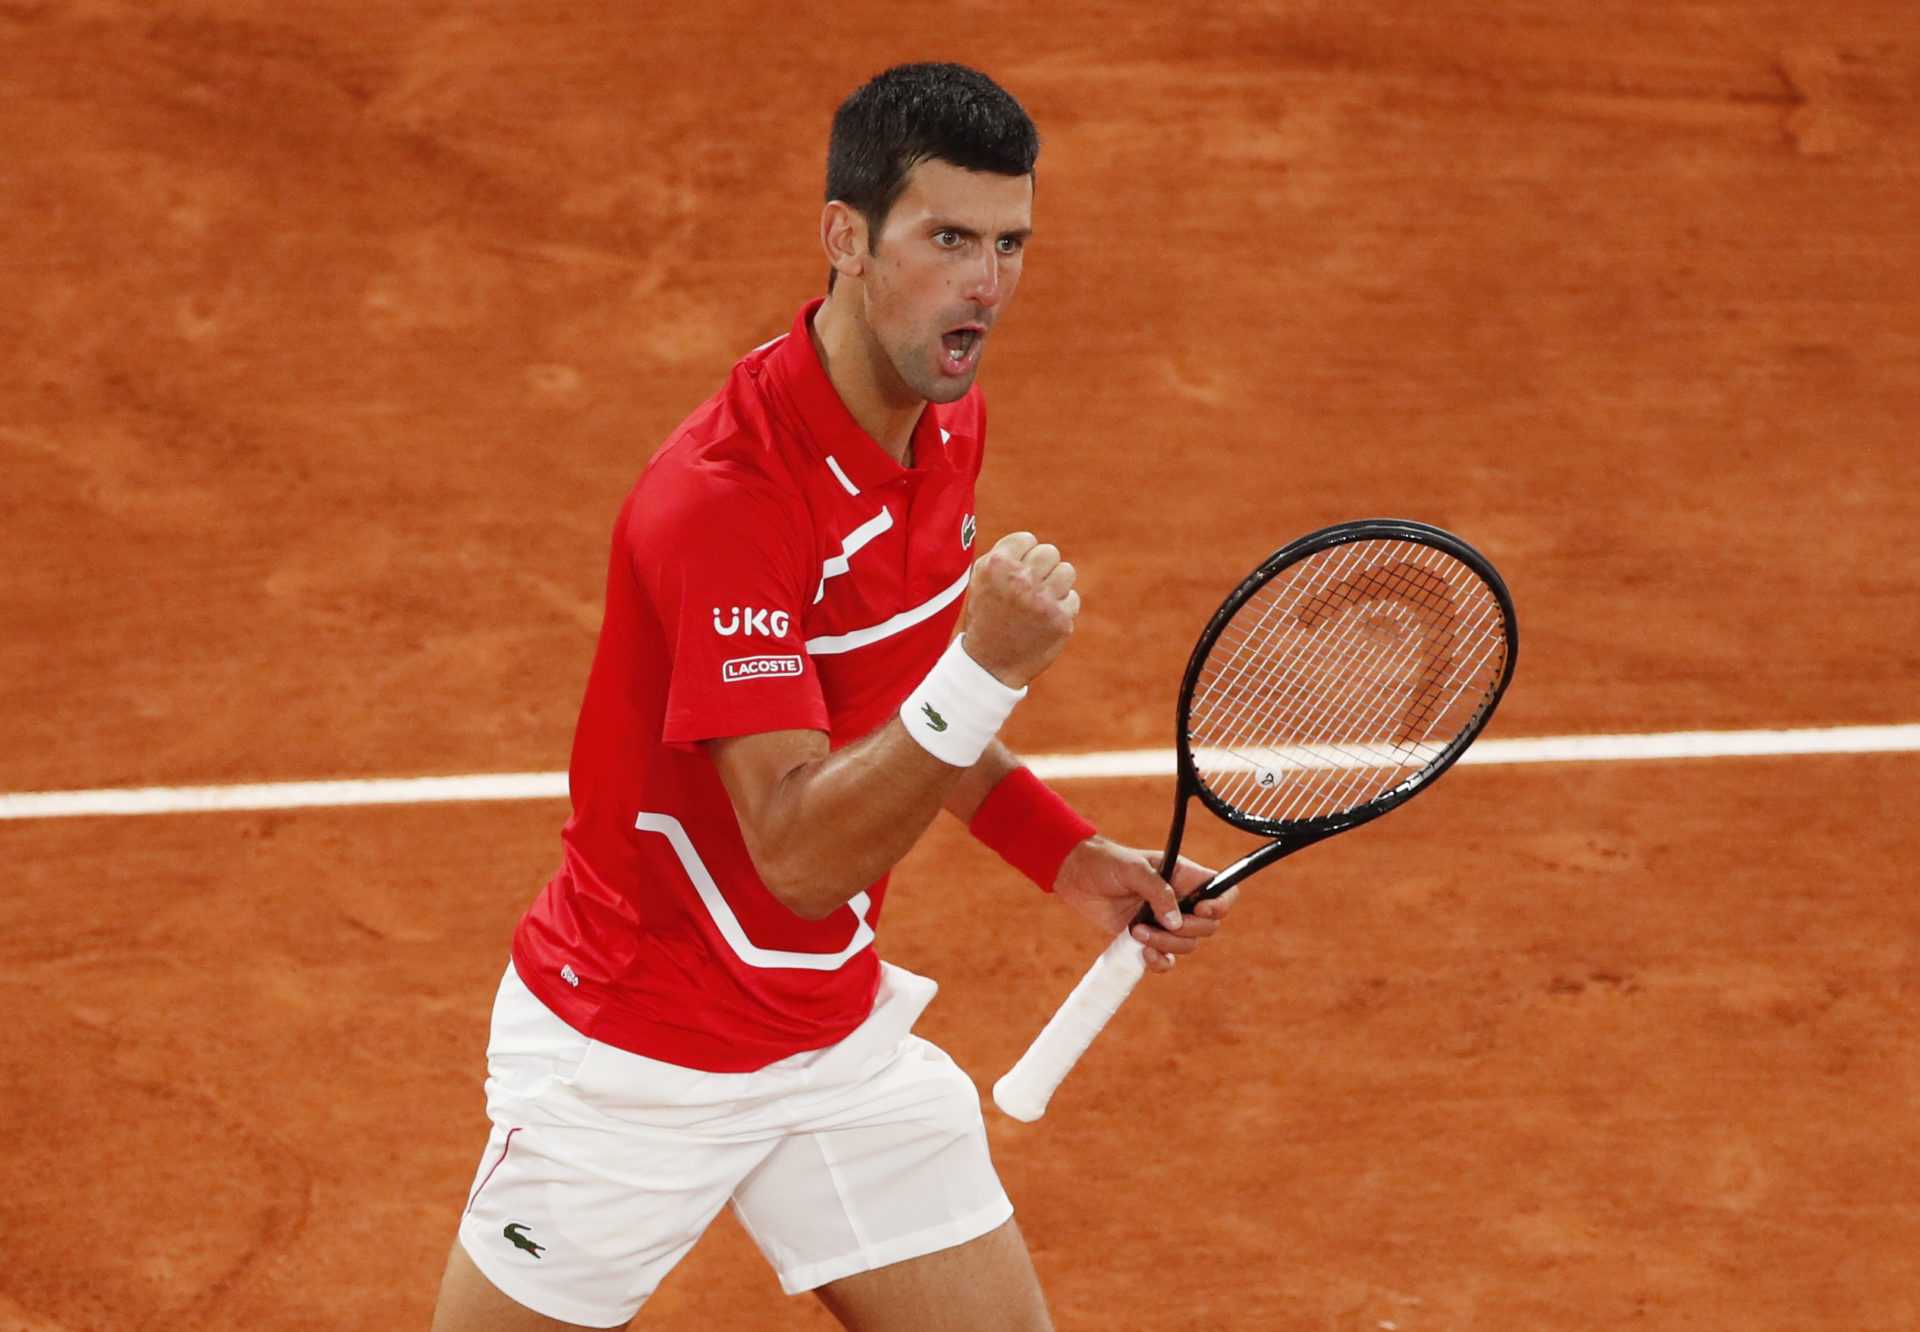 «Crown of All Achievements»: Novak Djokovic fier de l’exploit ‘Unreal’ dans Strange Season